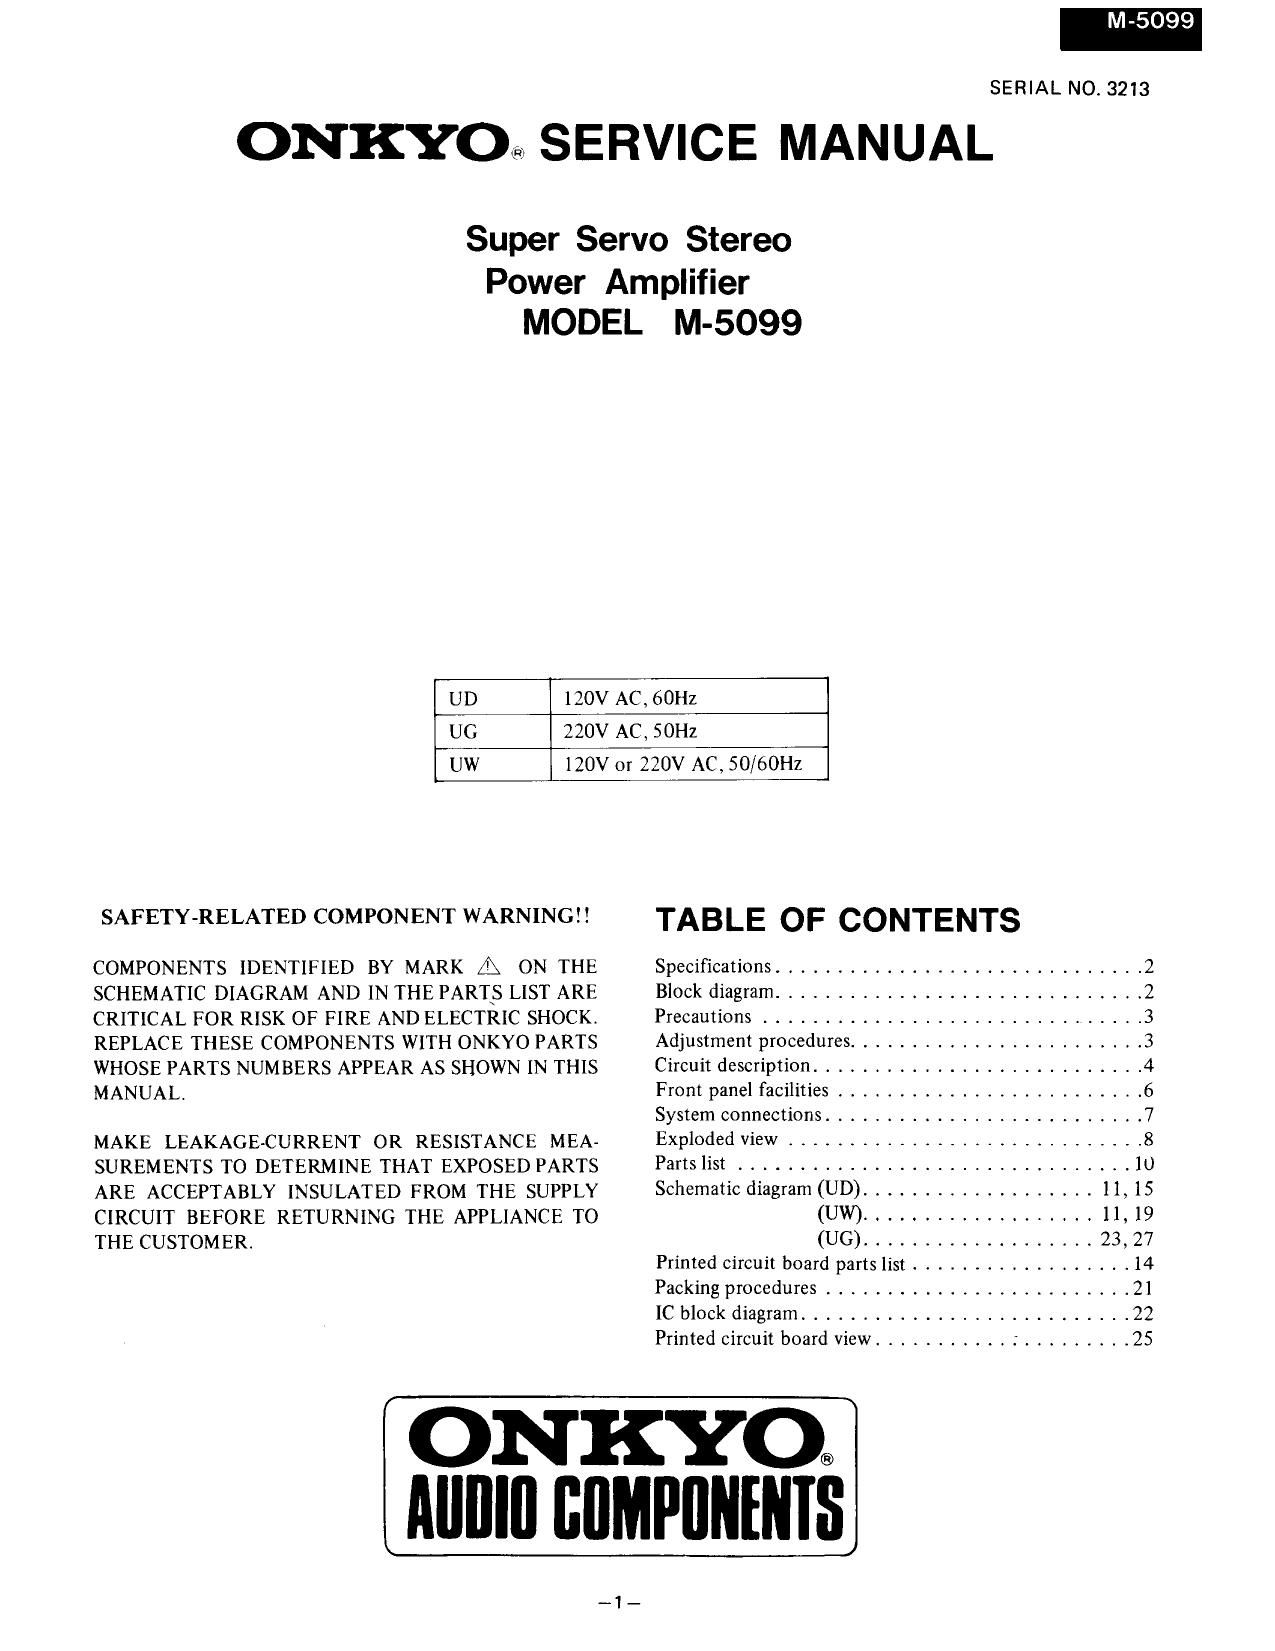 Onkyo M 5099 Service Manual